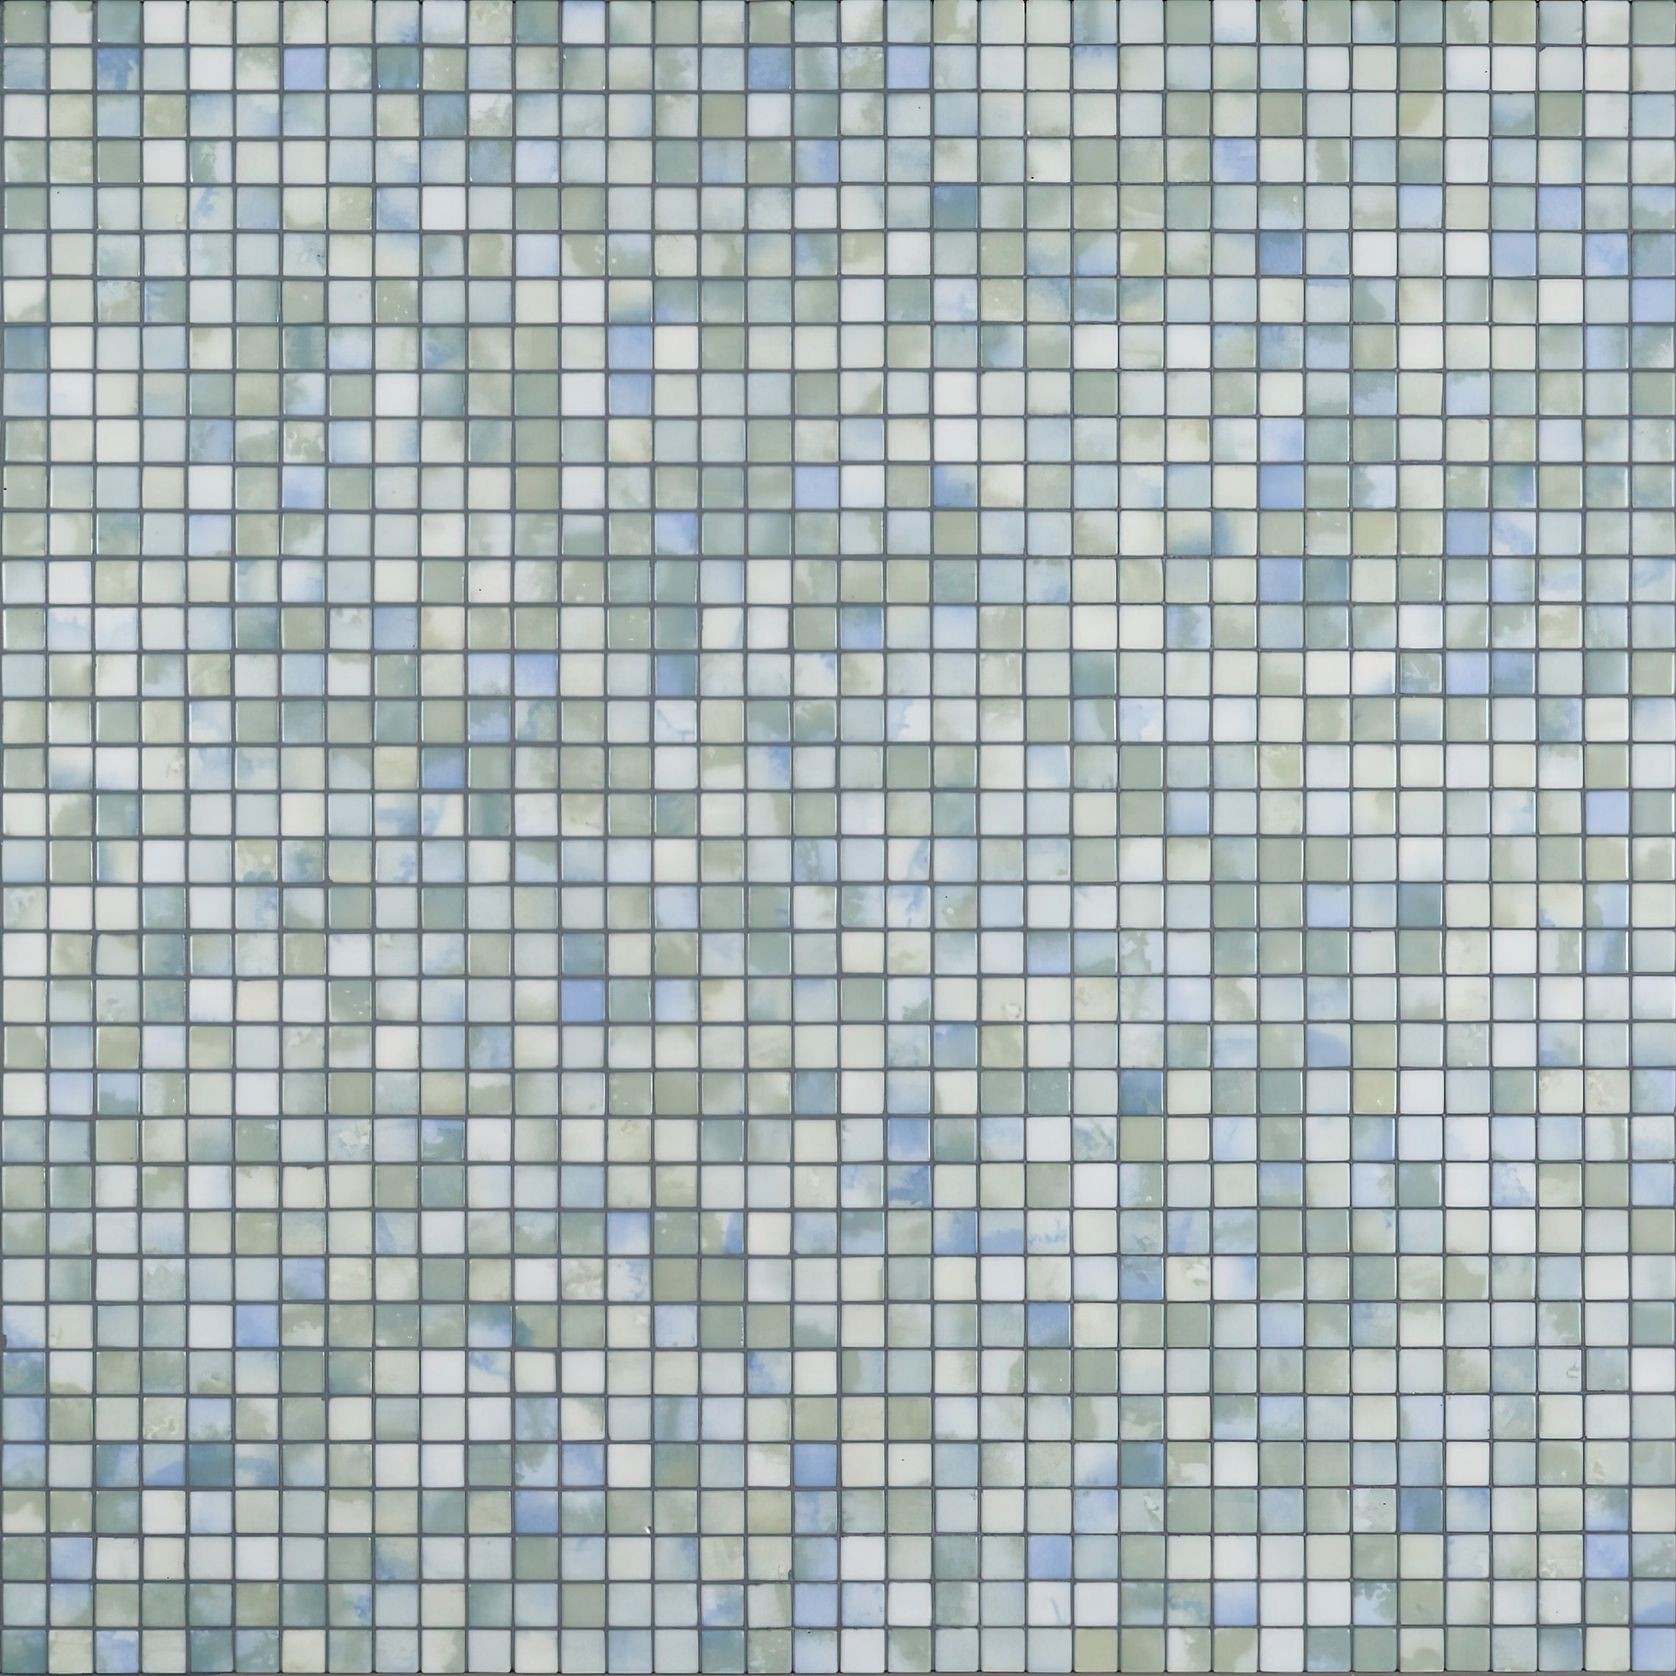 Fluid Tile | Aquarelle Collection by Ezarri gallery detail image